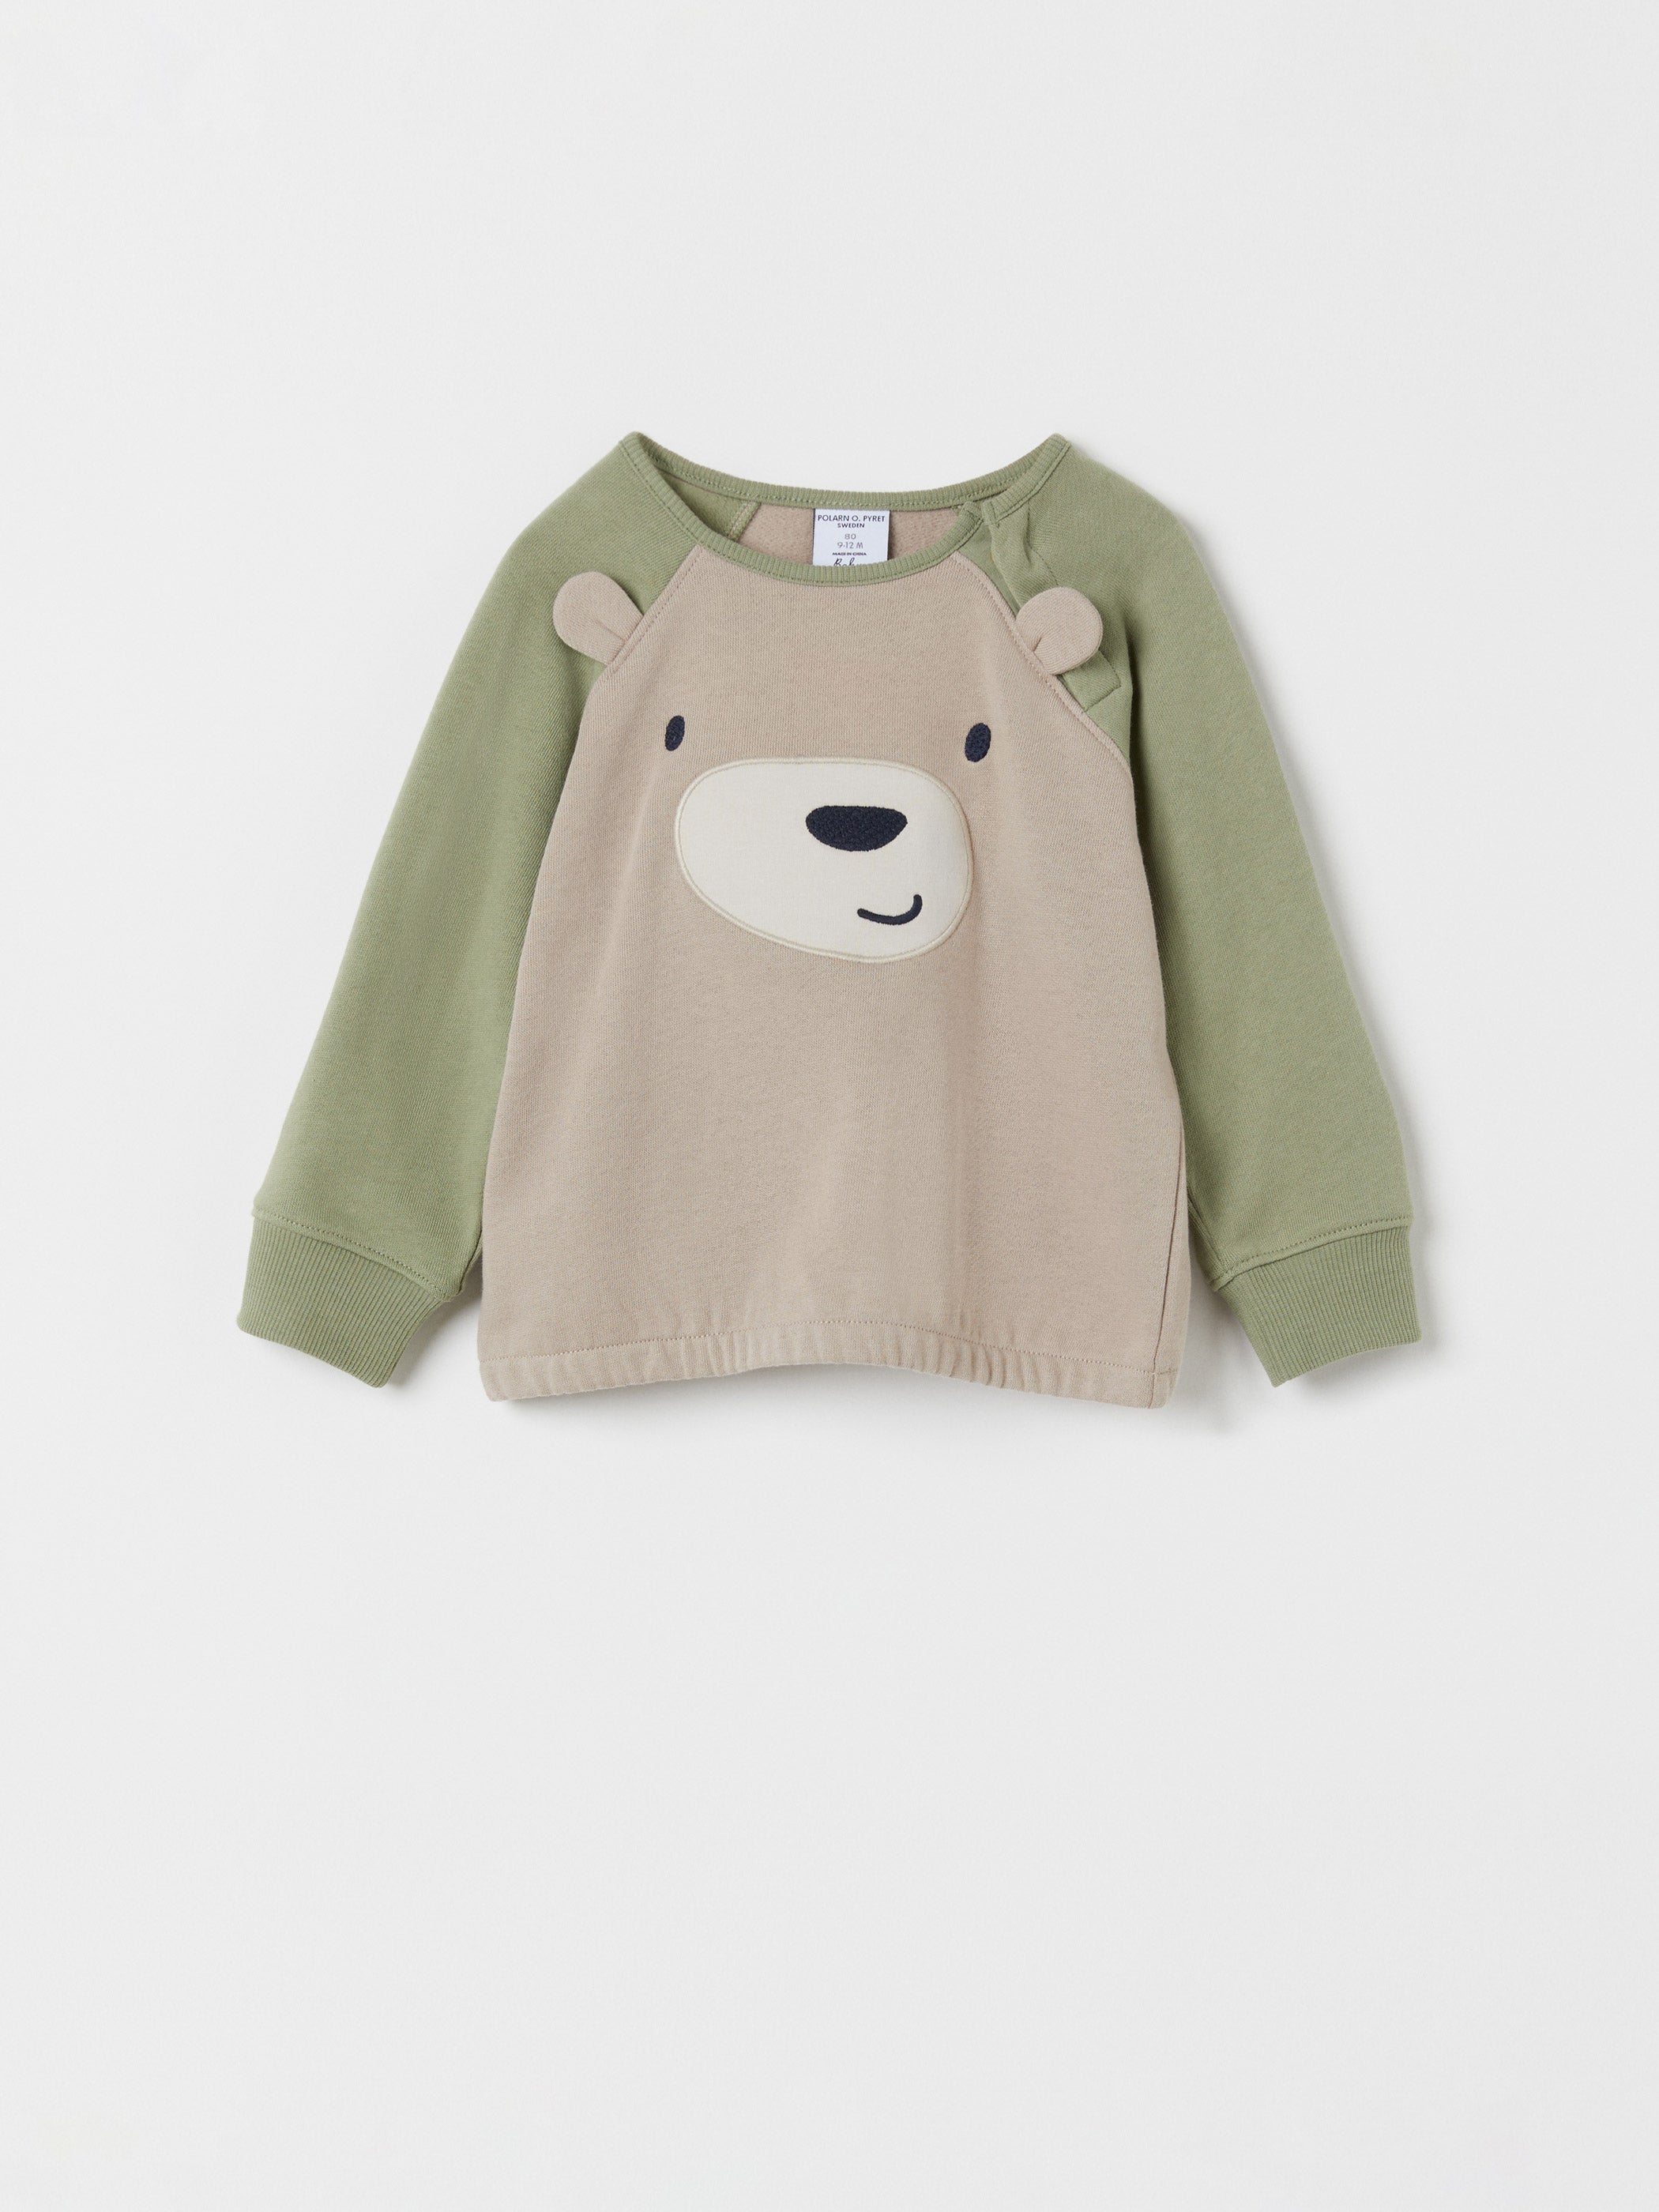 Bear Applique Baby Sweatshirt